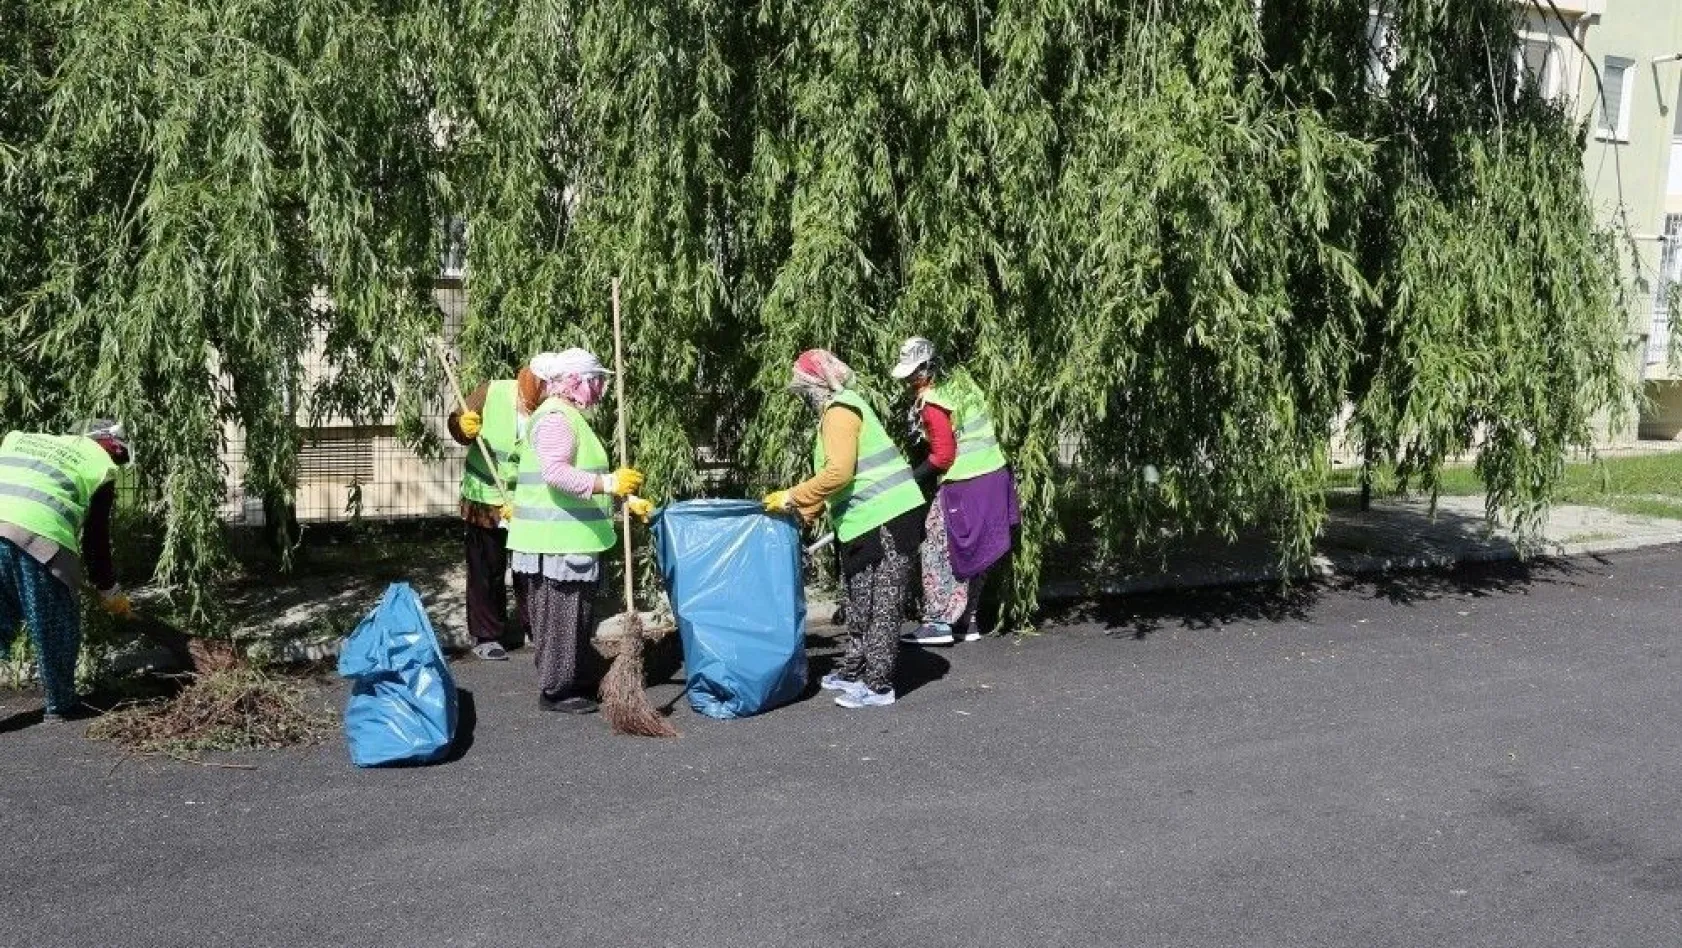 Erzincan Belediyesi daha temiz bir Erzincan için çalışmalarına devam ediyor
